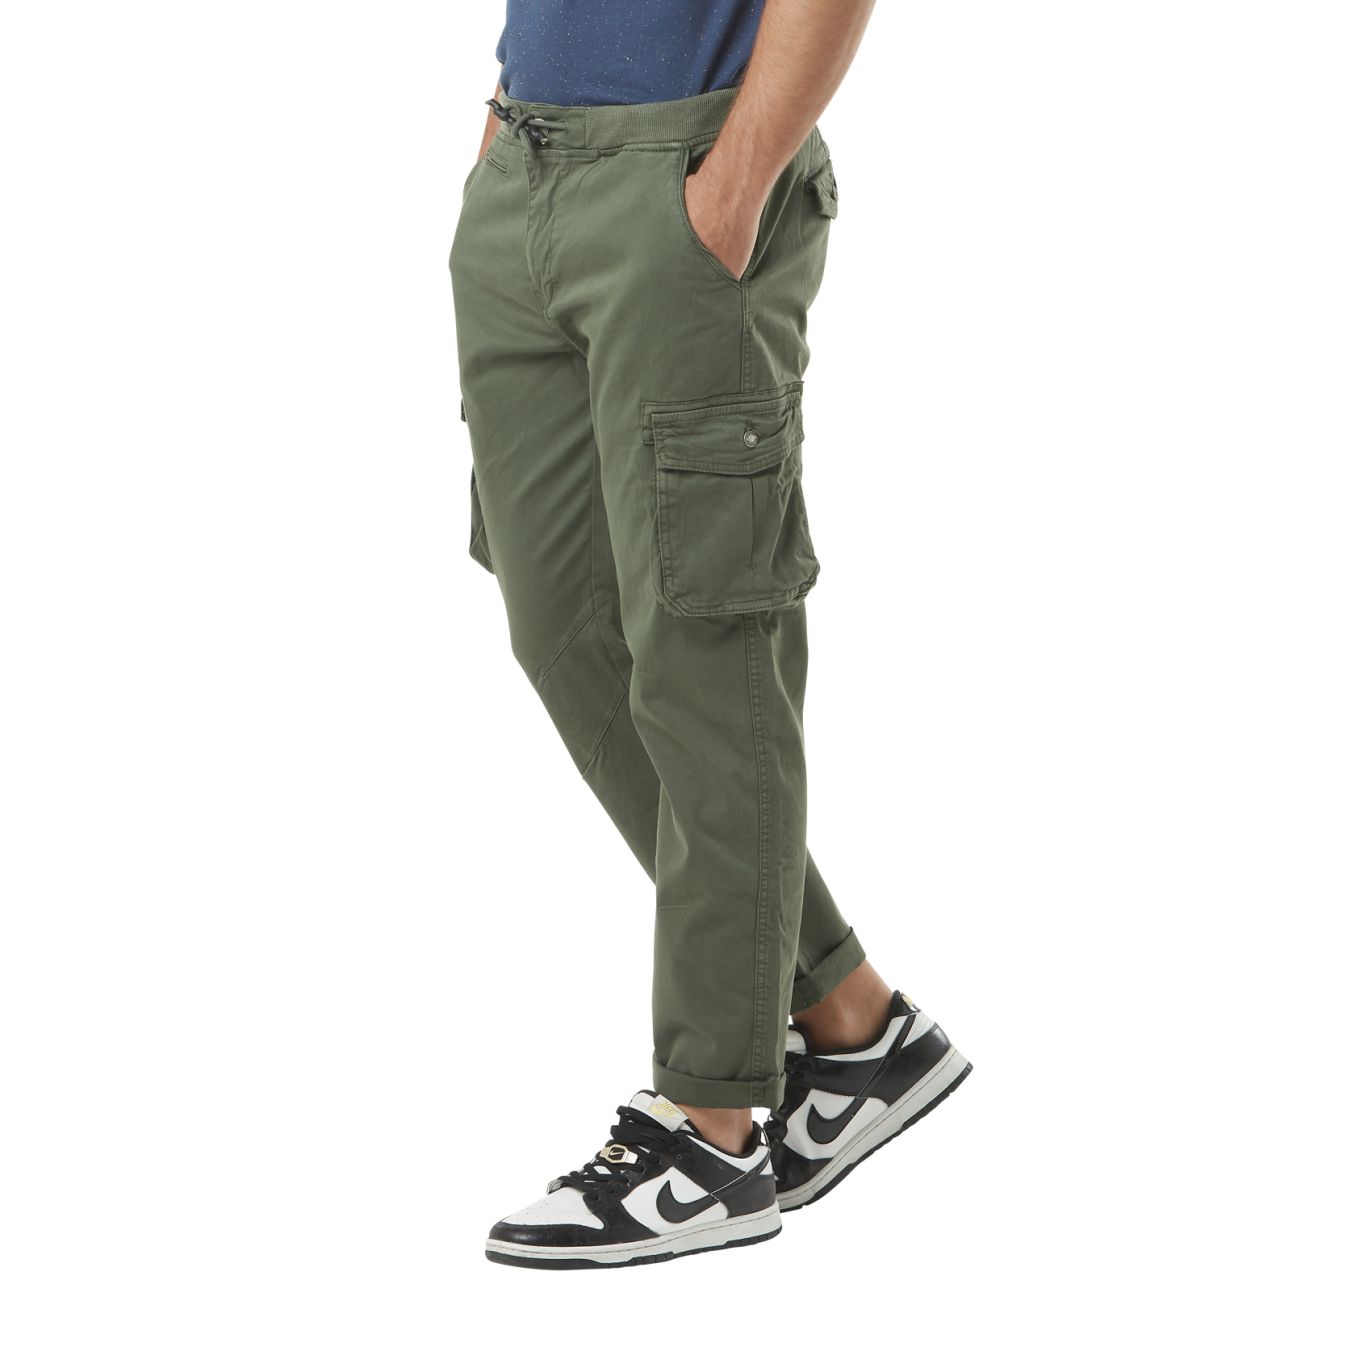 Pantalon cargo femme confortable et fonctionnel avec poches pratiques